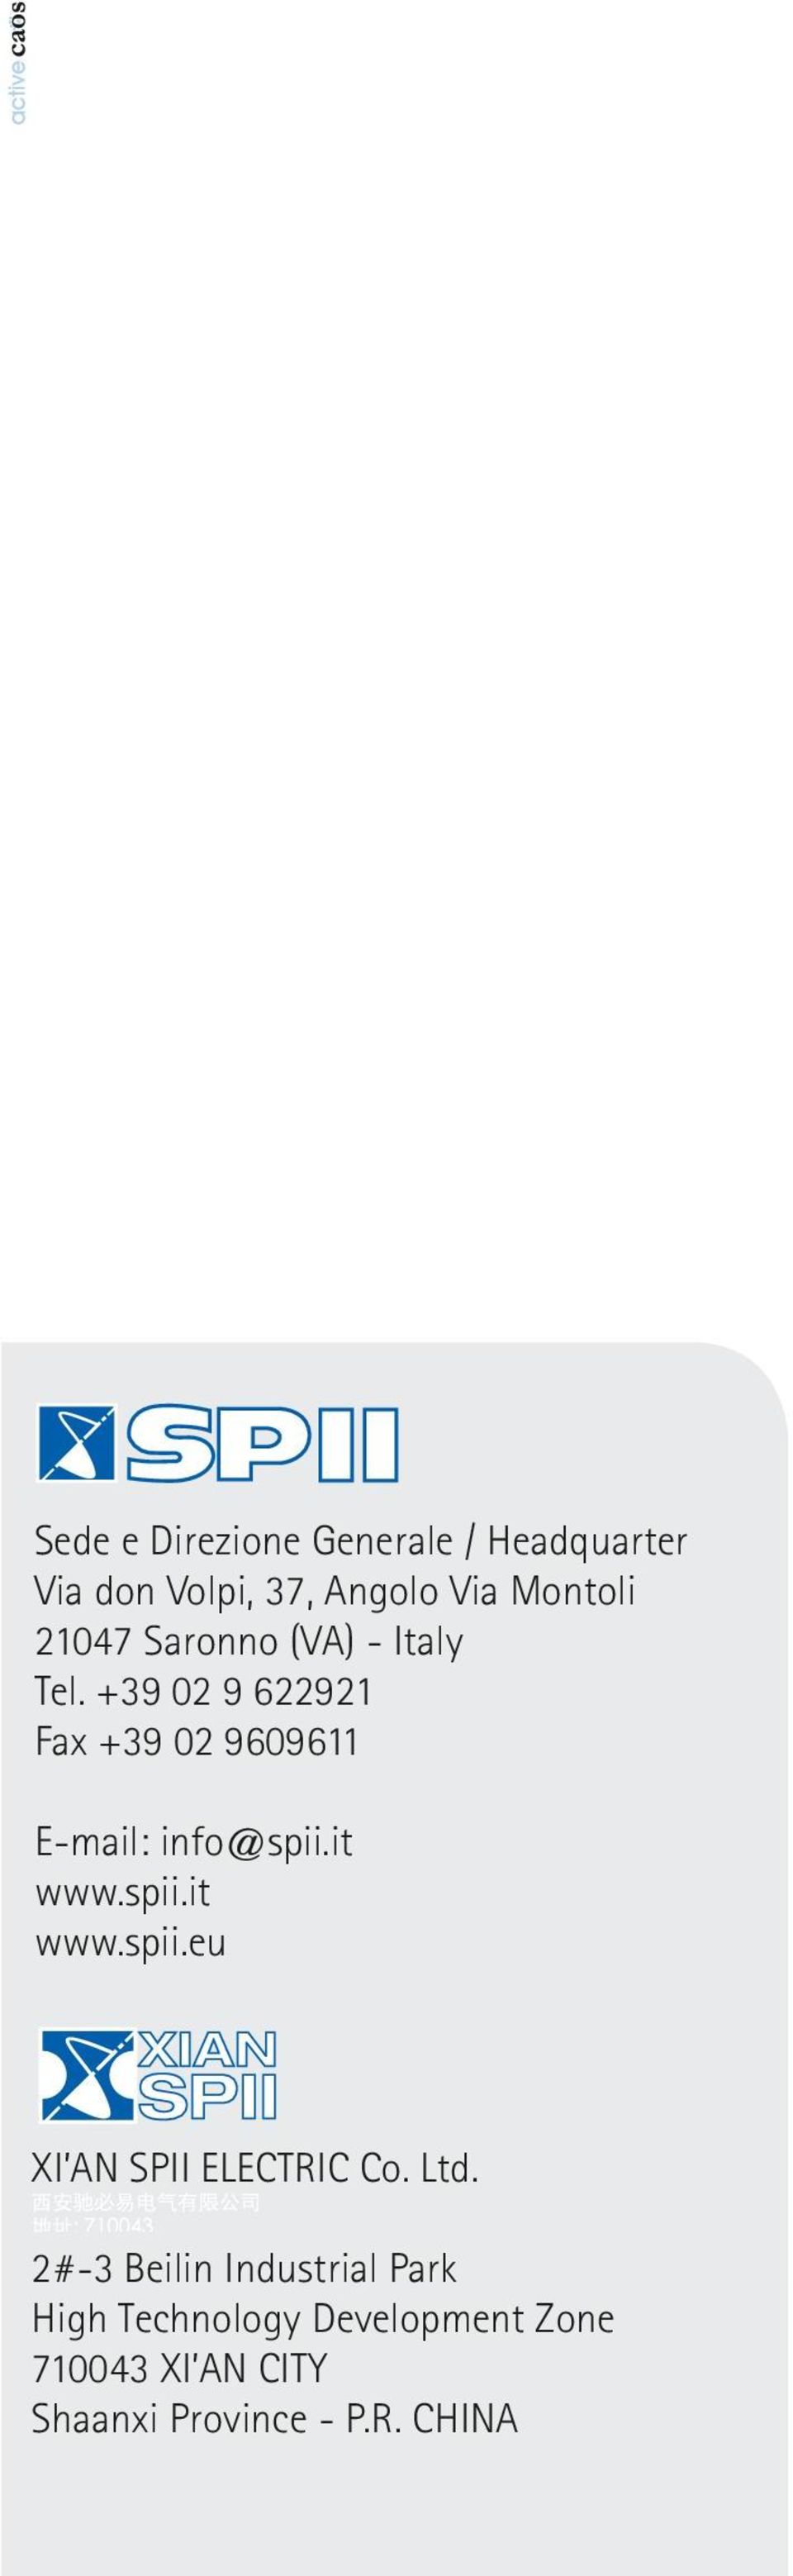 +39 02 9 622921 Fax +39 02 9609611 E-mail: info@spii.it www.spii.it www.spii.eu XI AN SPII ELECTRIC Co.